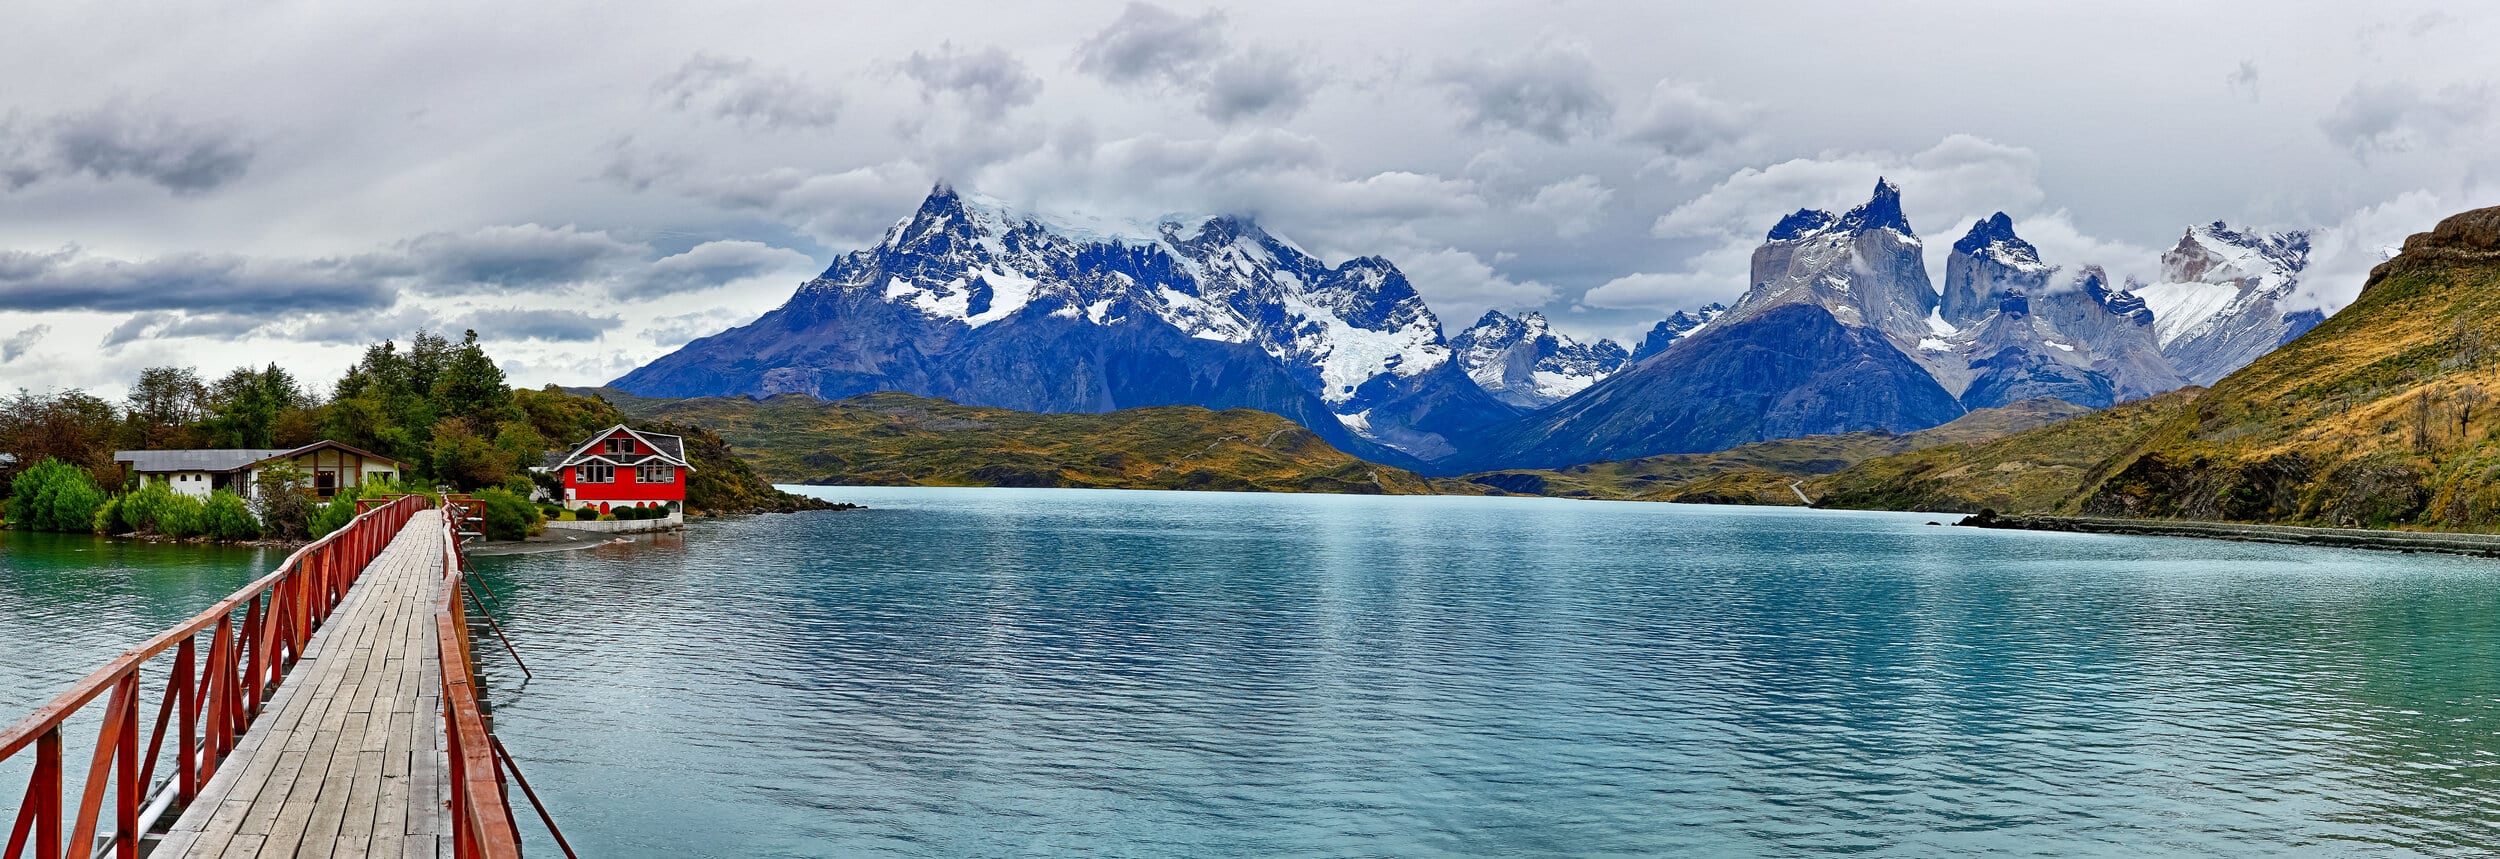 Patagonia Lake view